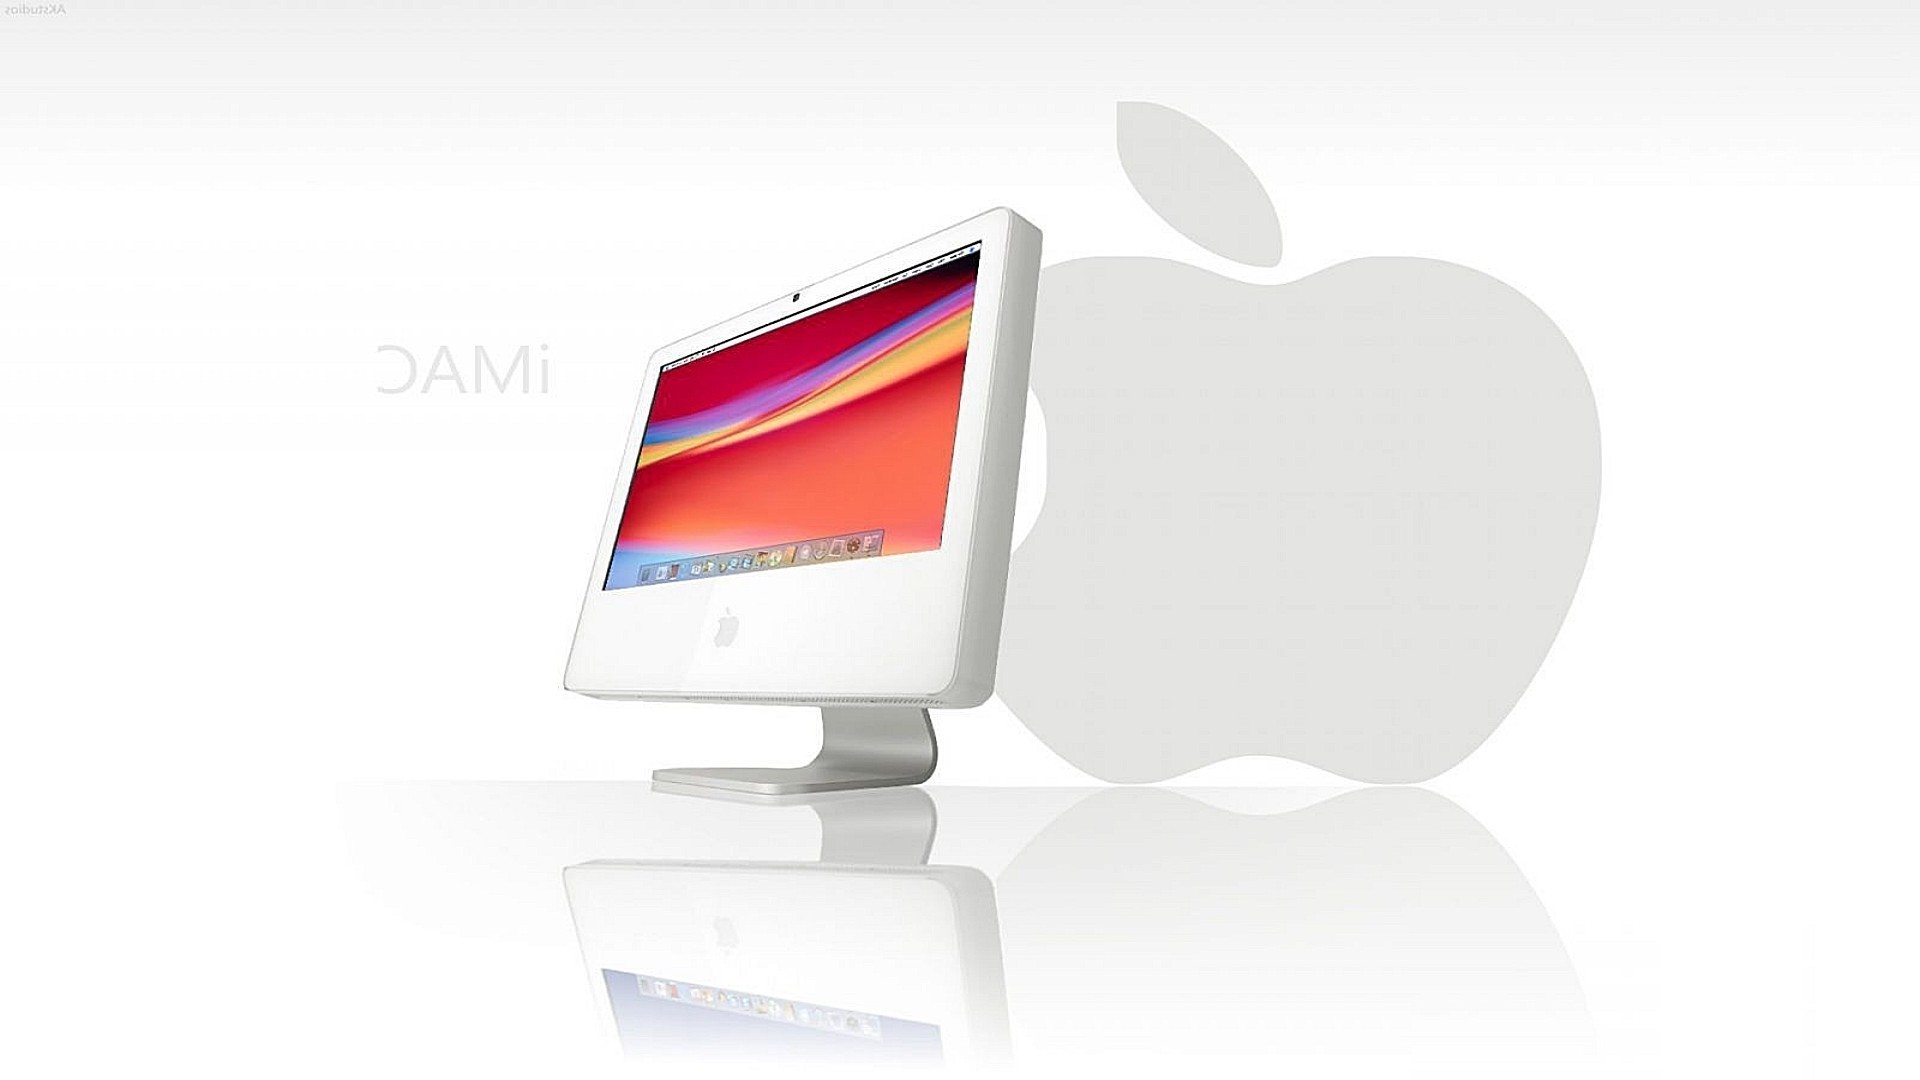 Base64 9j 4aaqskzjrgabaqaaaqabaad. Apple. Логотип Apple IMAC. Обои на рабочий стол Apple. Обои на монитор aрpel.